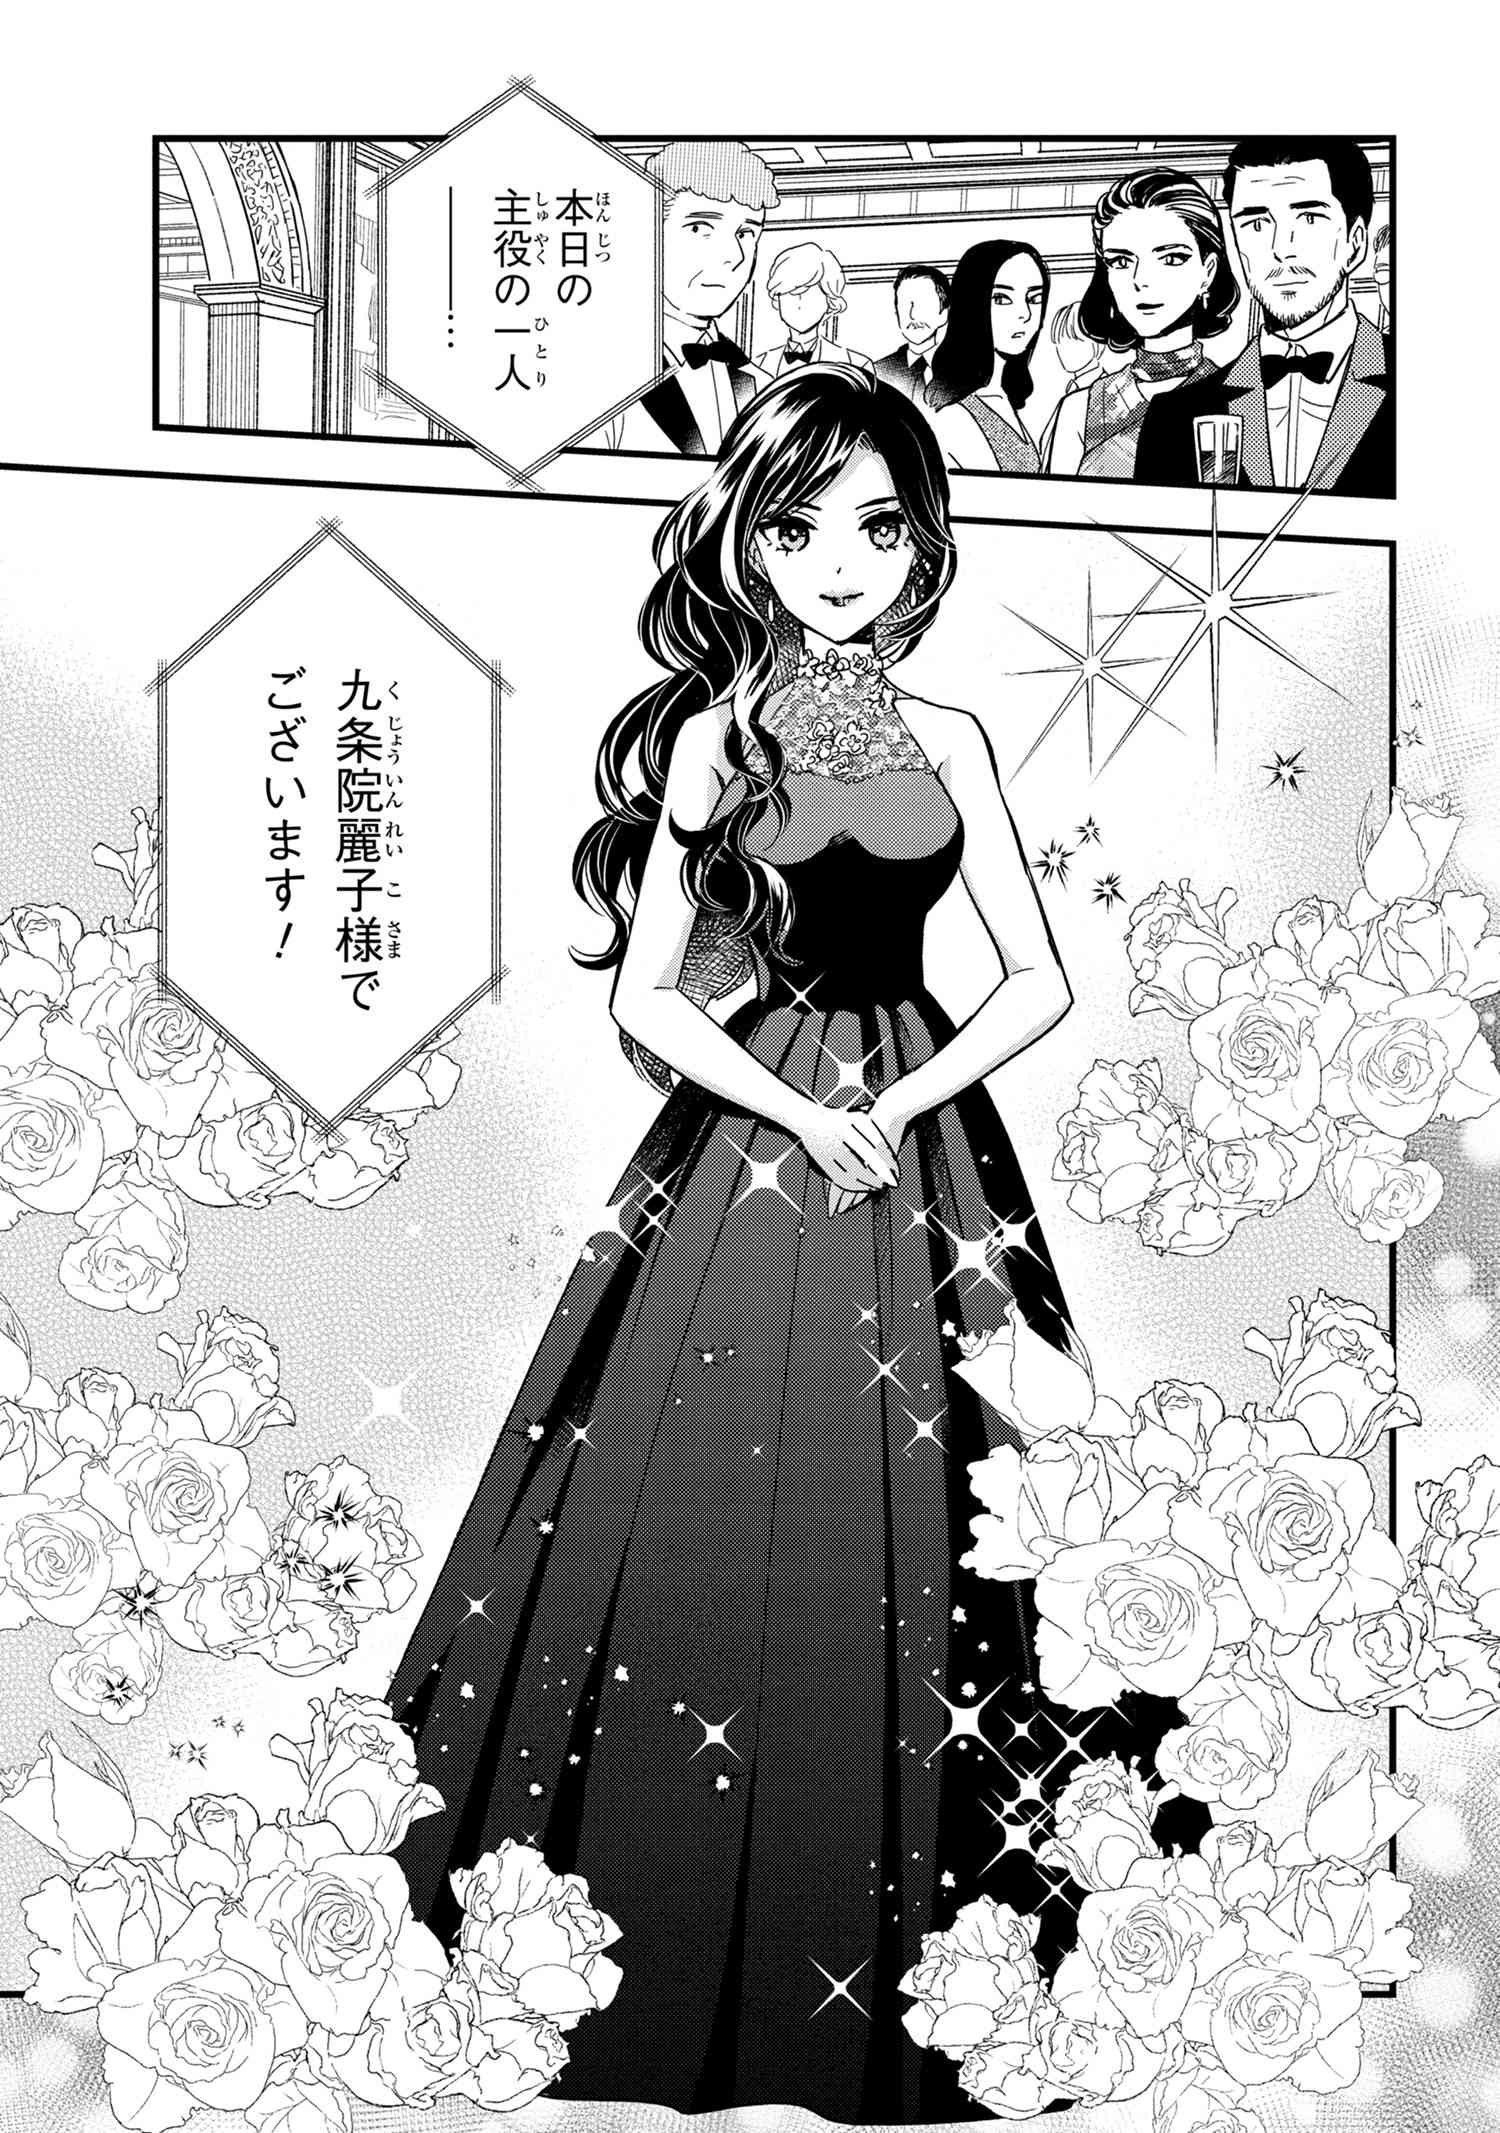 Reiko no Fuugi Akuyaku Reijou to Yobarete imasu ga, tada no Binbou Musume desu - Chapter 14-1 - Page 1